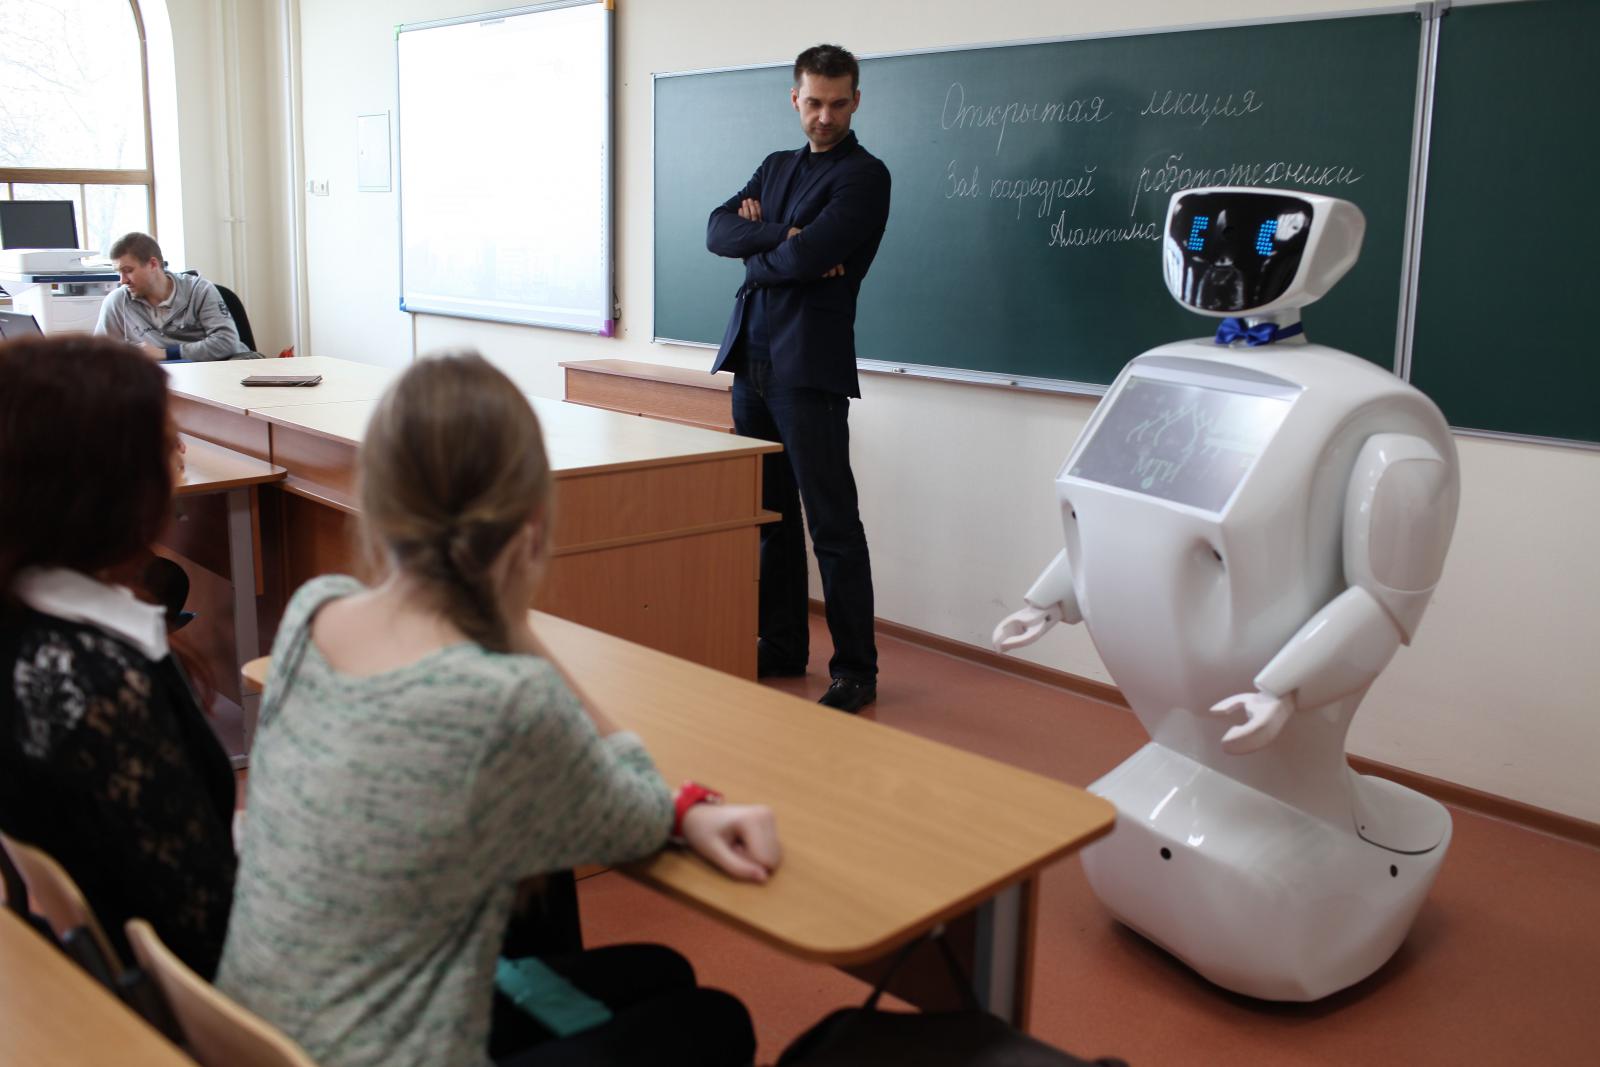 Будет уроком на будущее. Учитель робот в школе. Учитель в будущем. Школа будущего учителя роботы. Робот учитель образование.